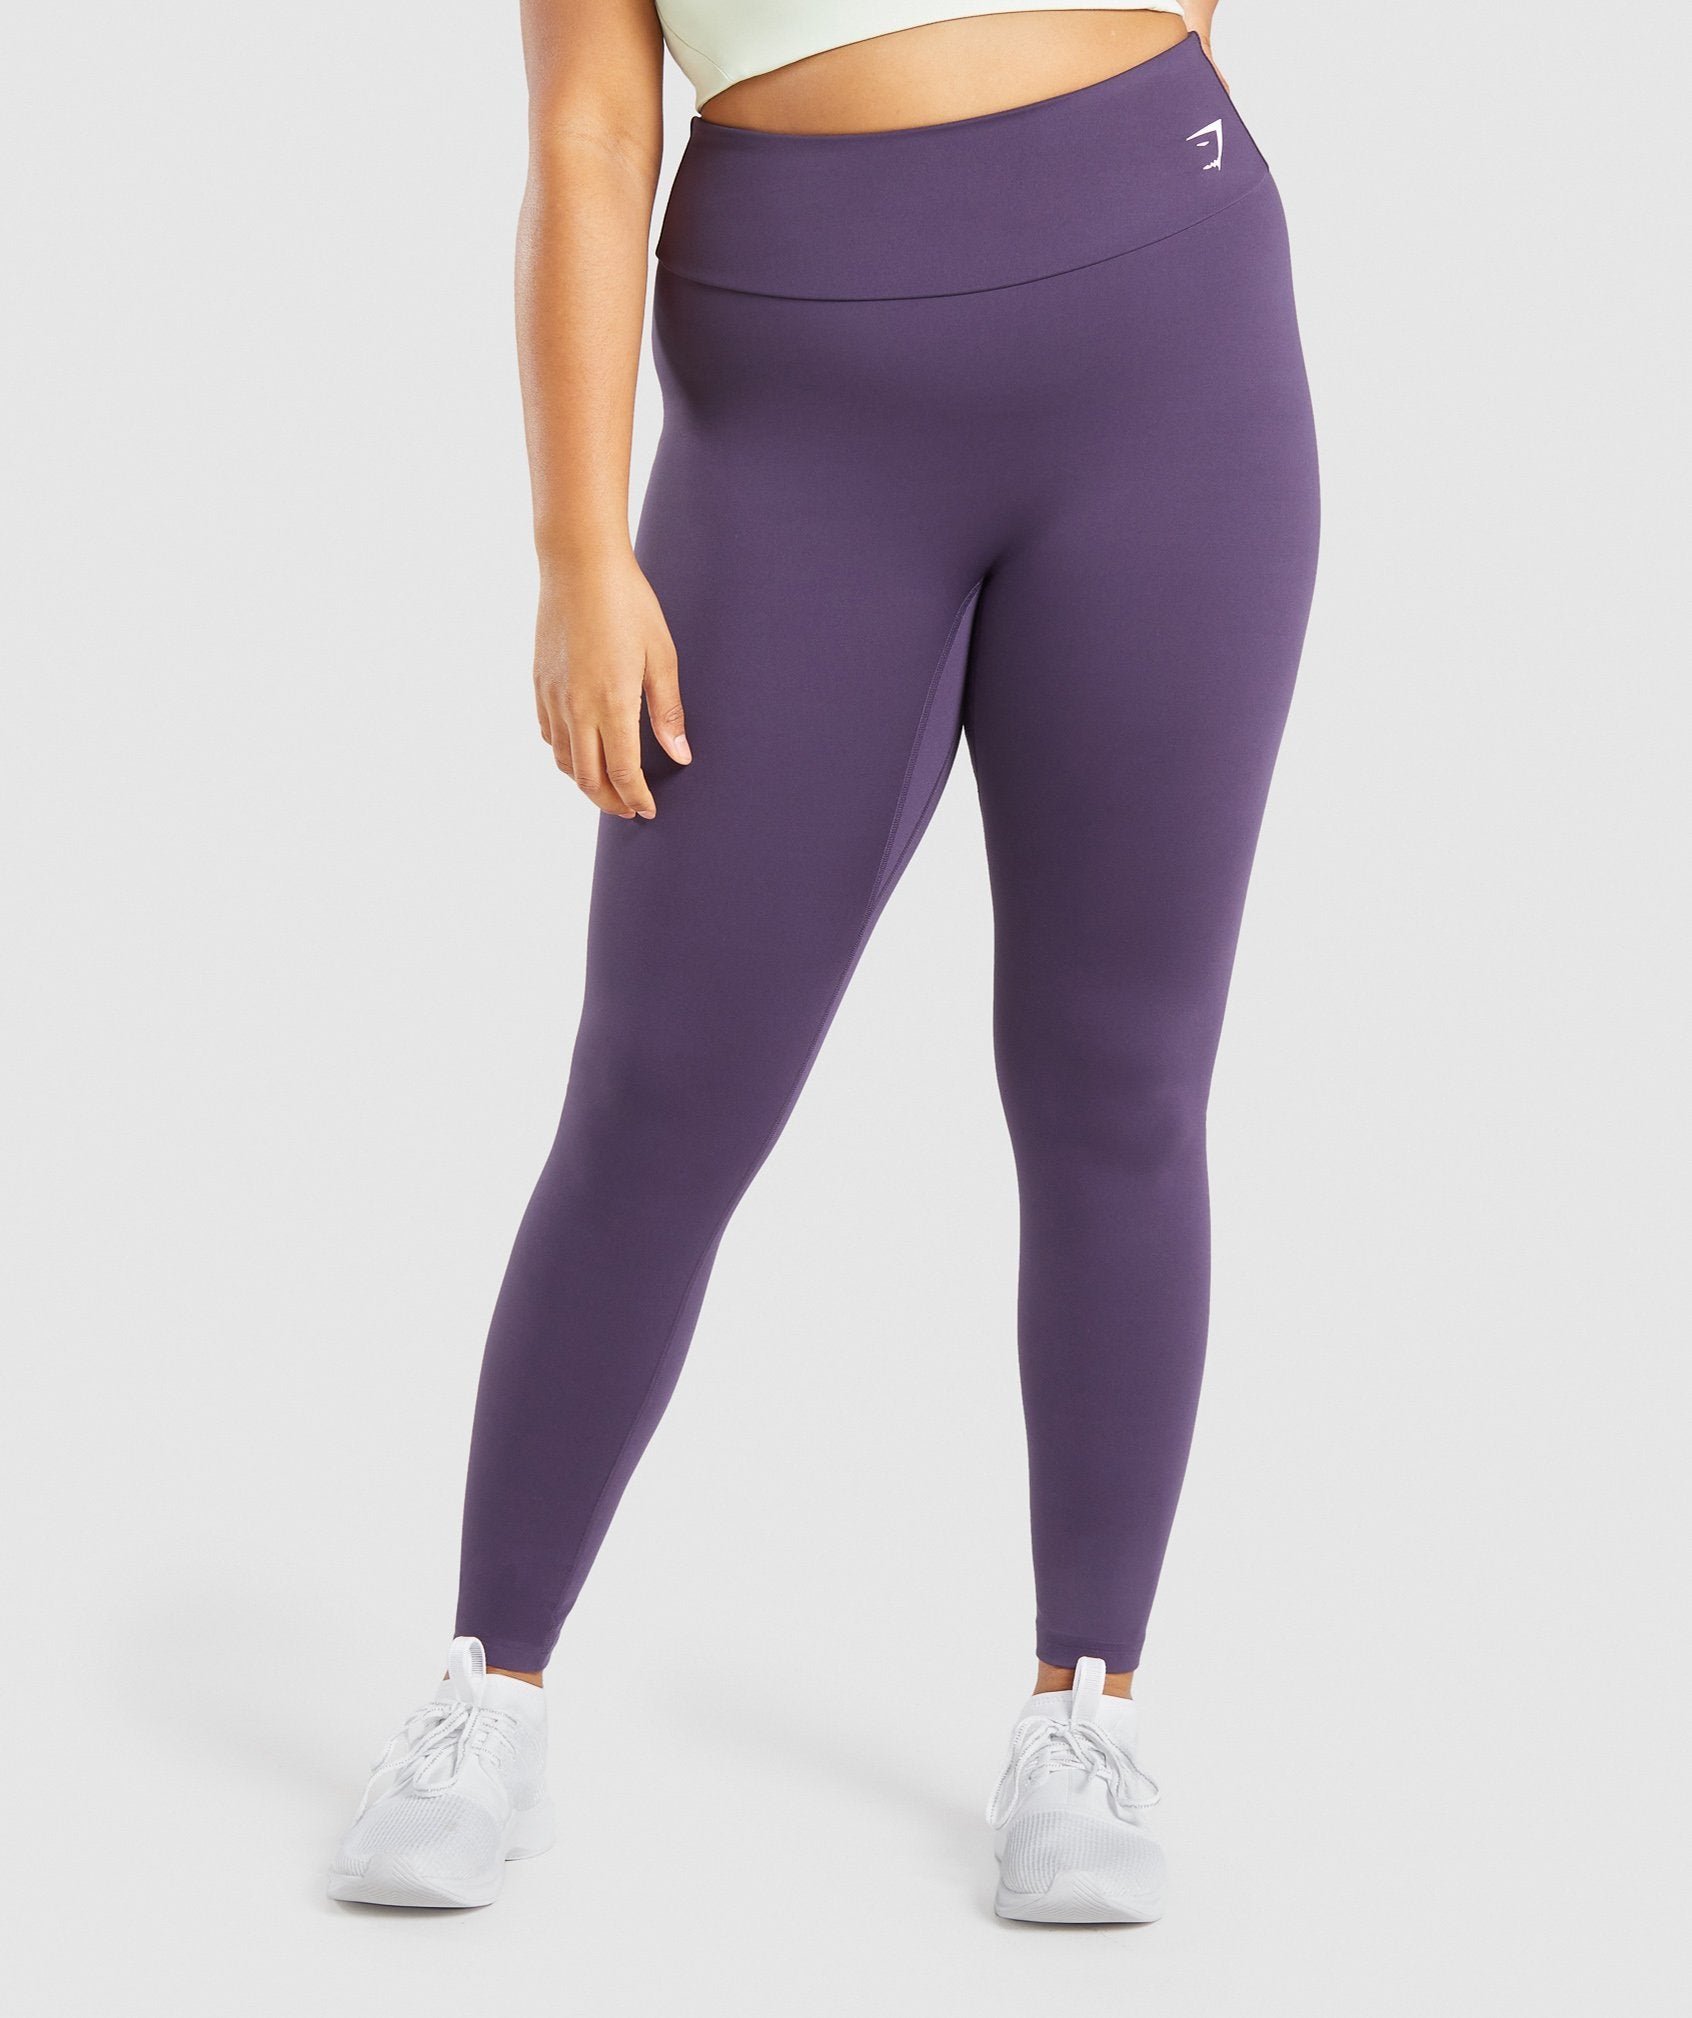 Women's Purple Workout Leggings